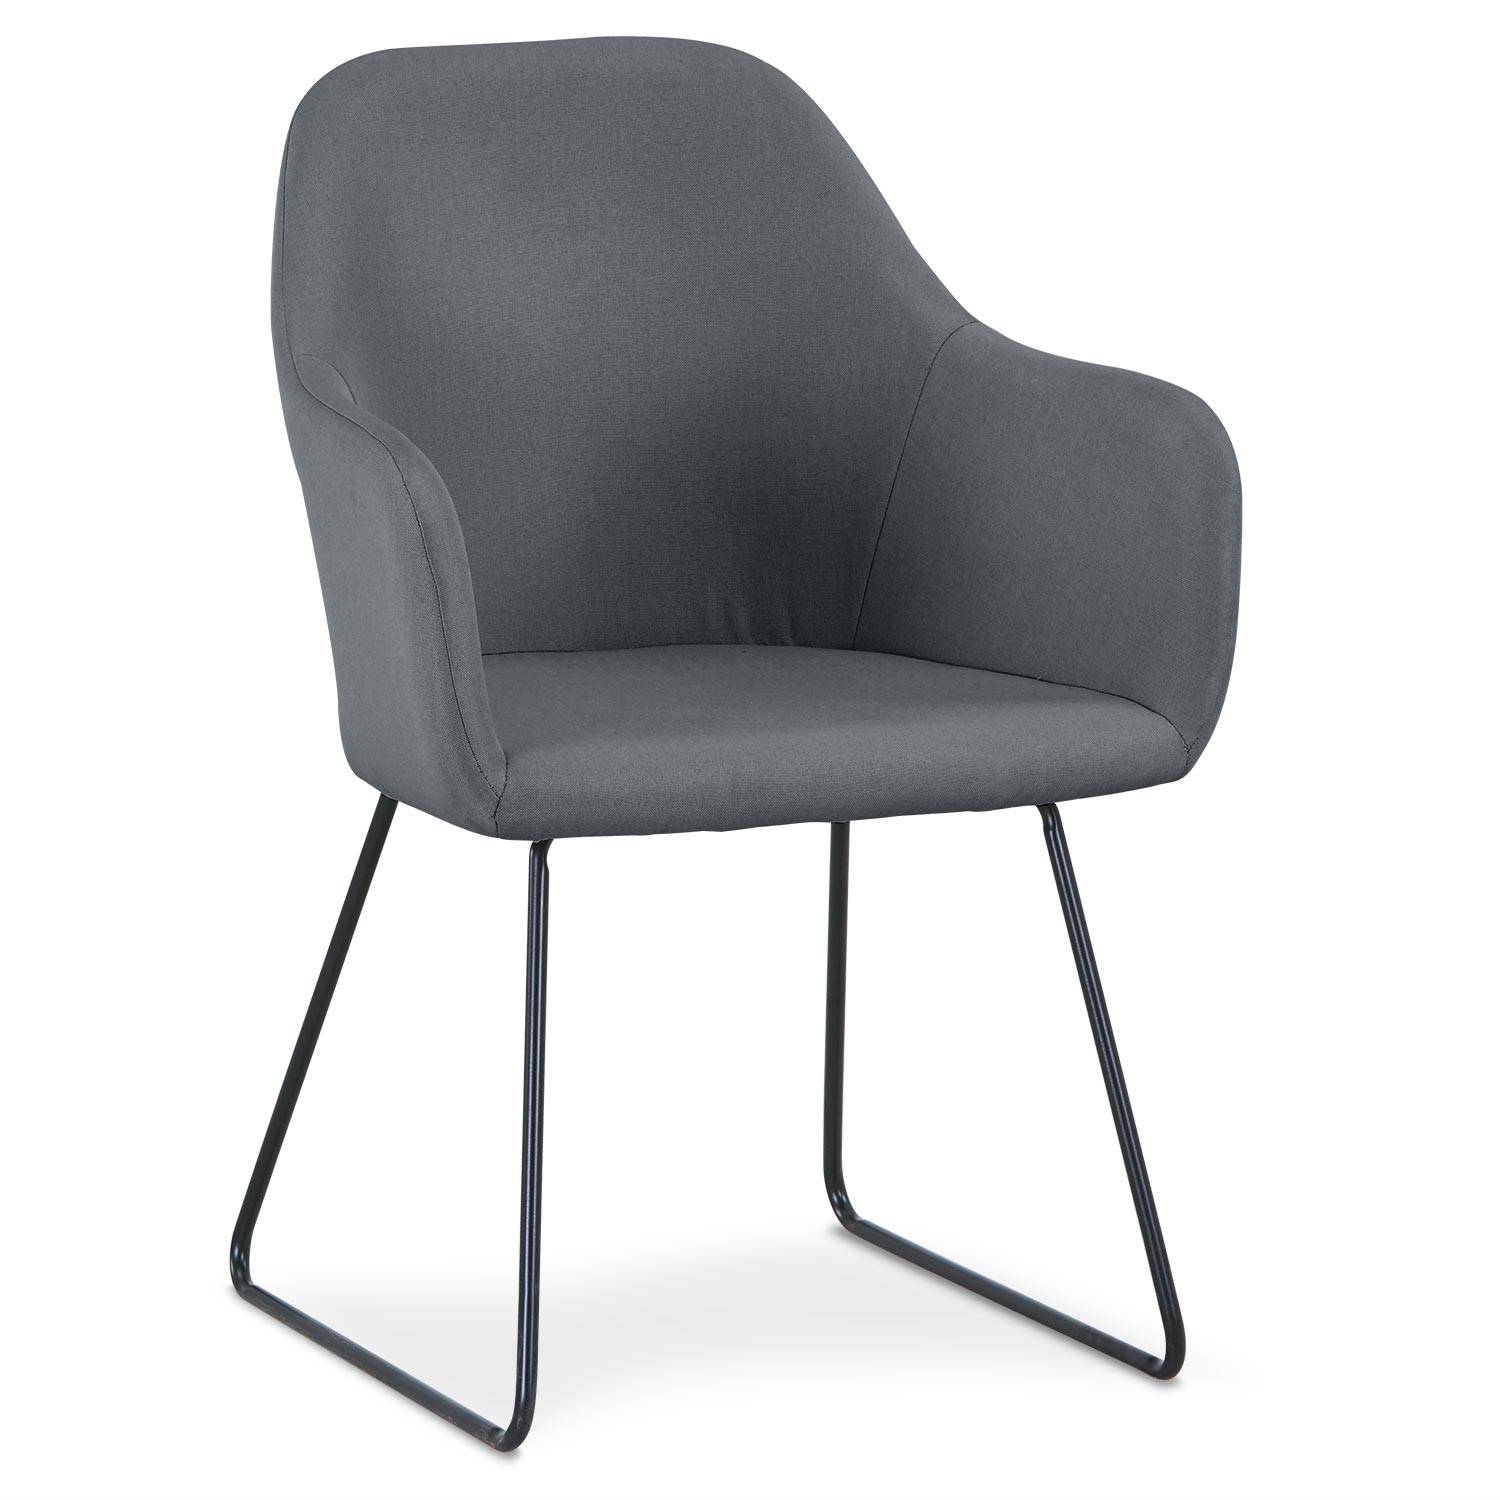 Epok stoel / fauteuil van zwart metaal en grijze stof